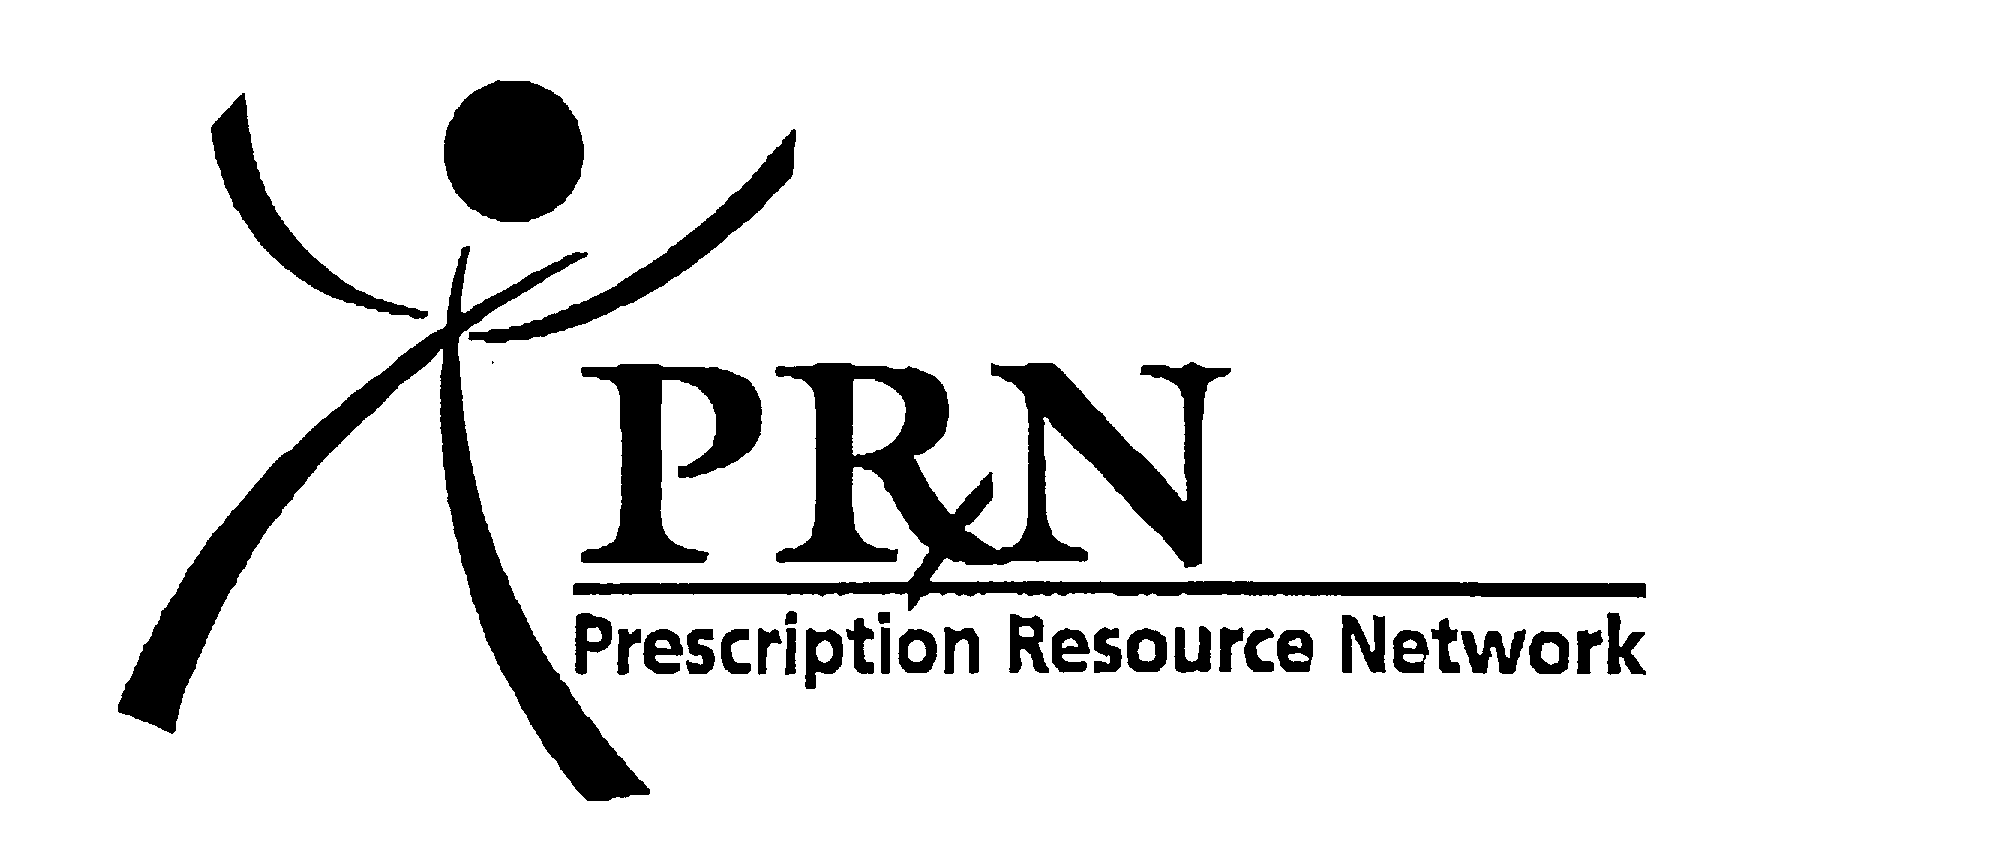  PRN PRESCRIPTION RESOURCE NETWORK